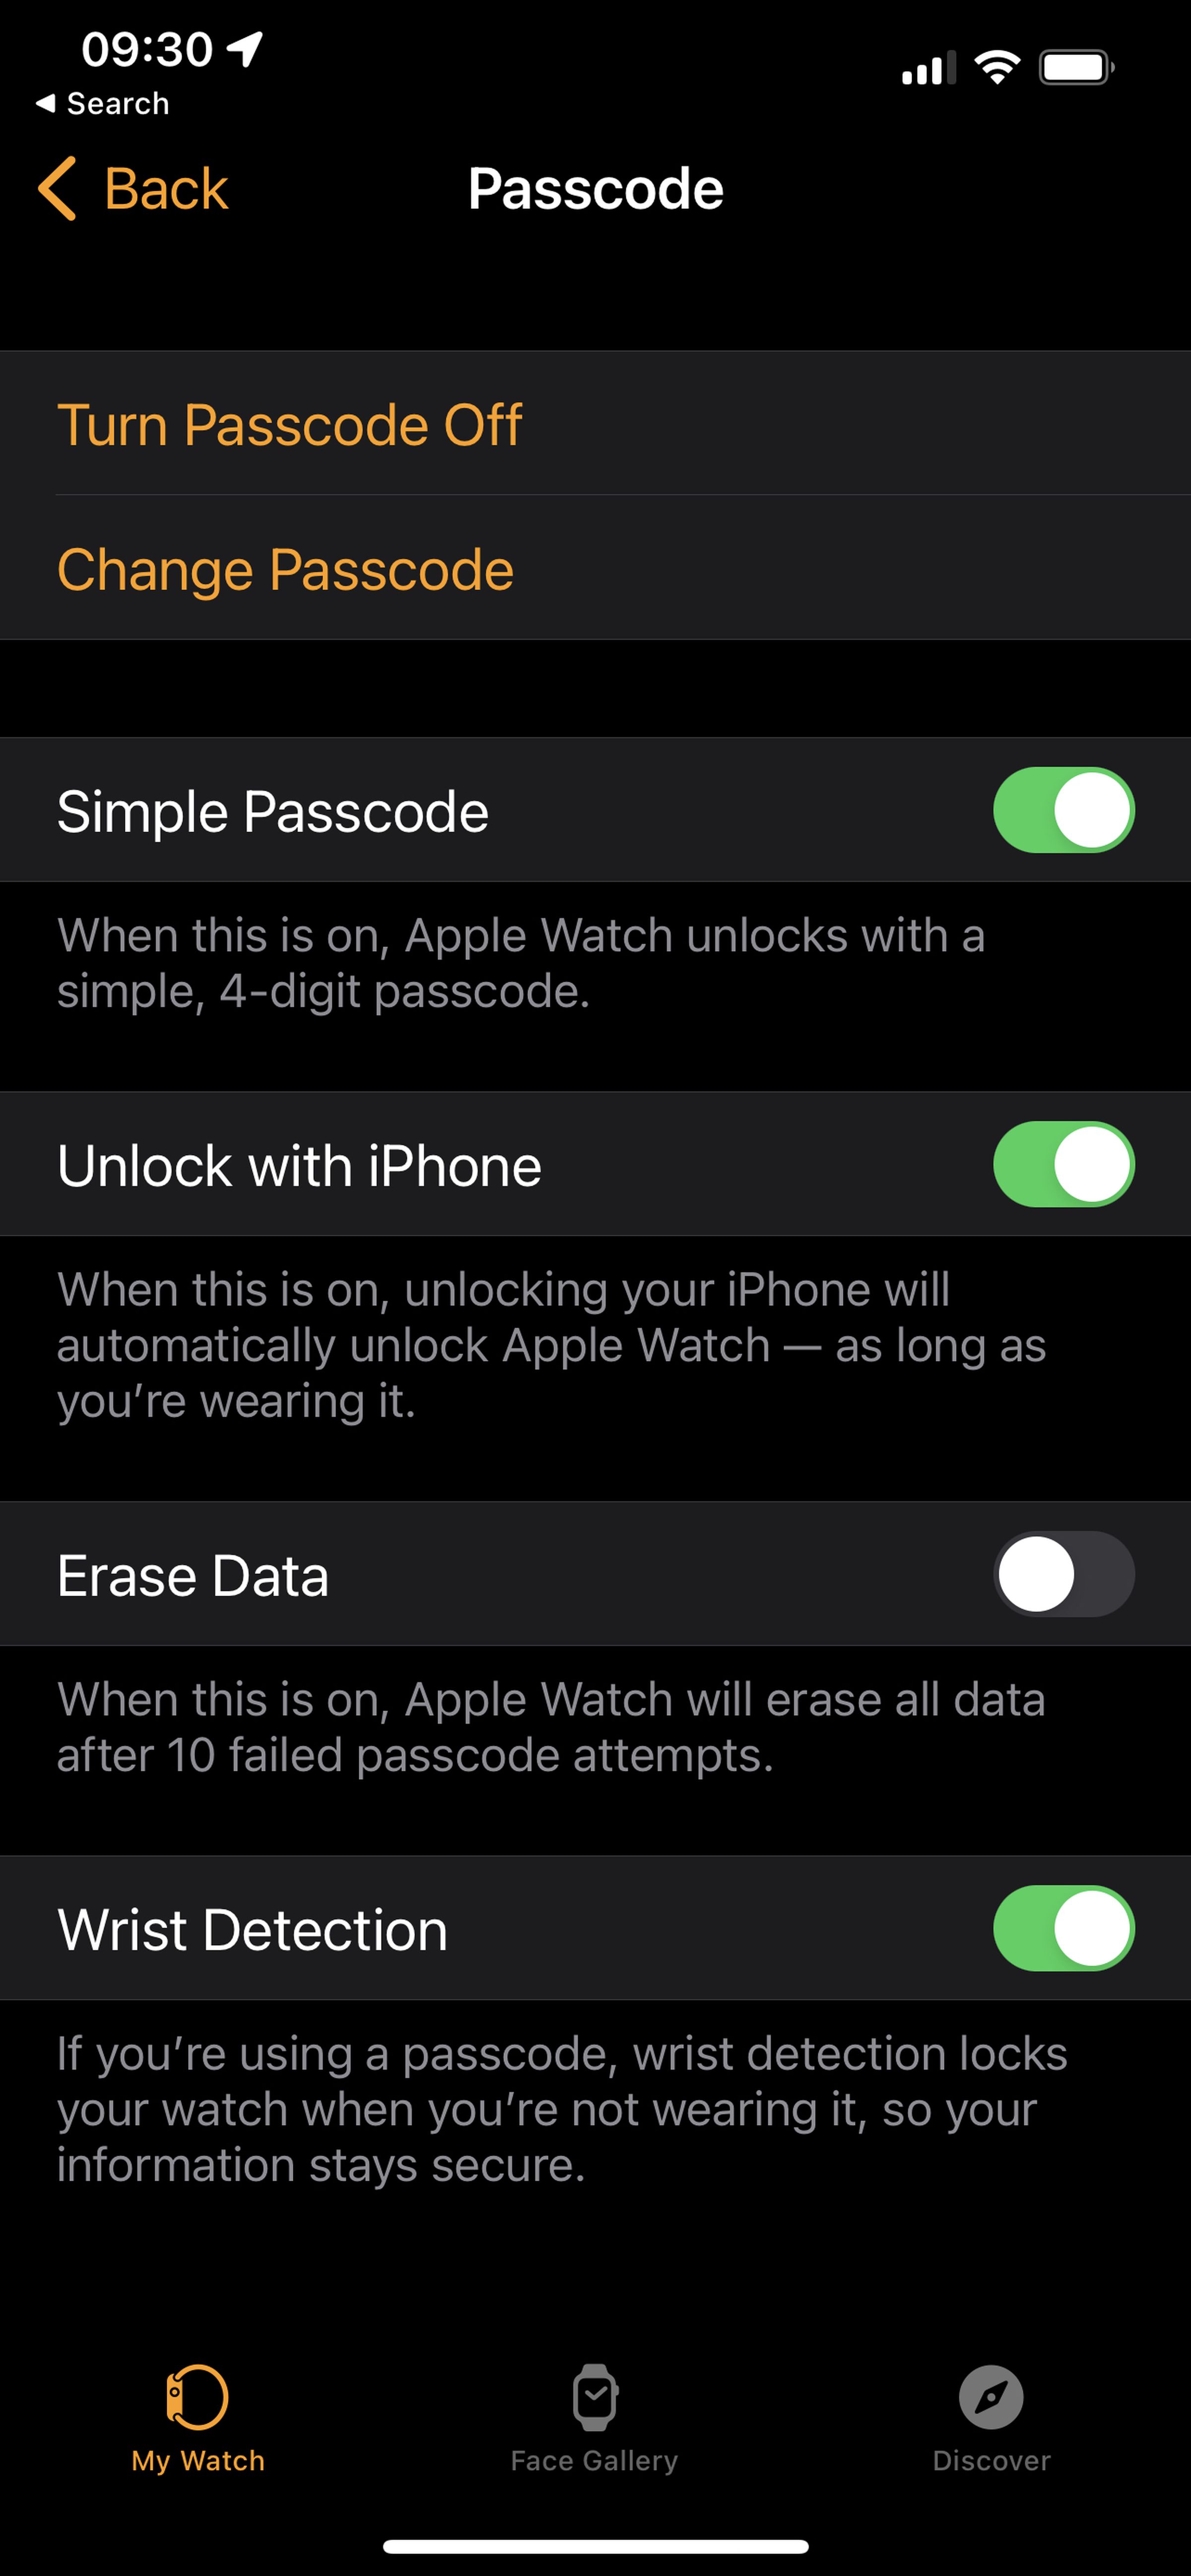 The Passcode menu in your iPhone’s Watch app